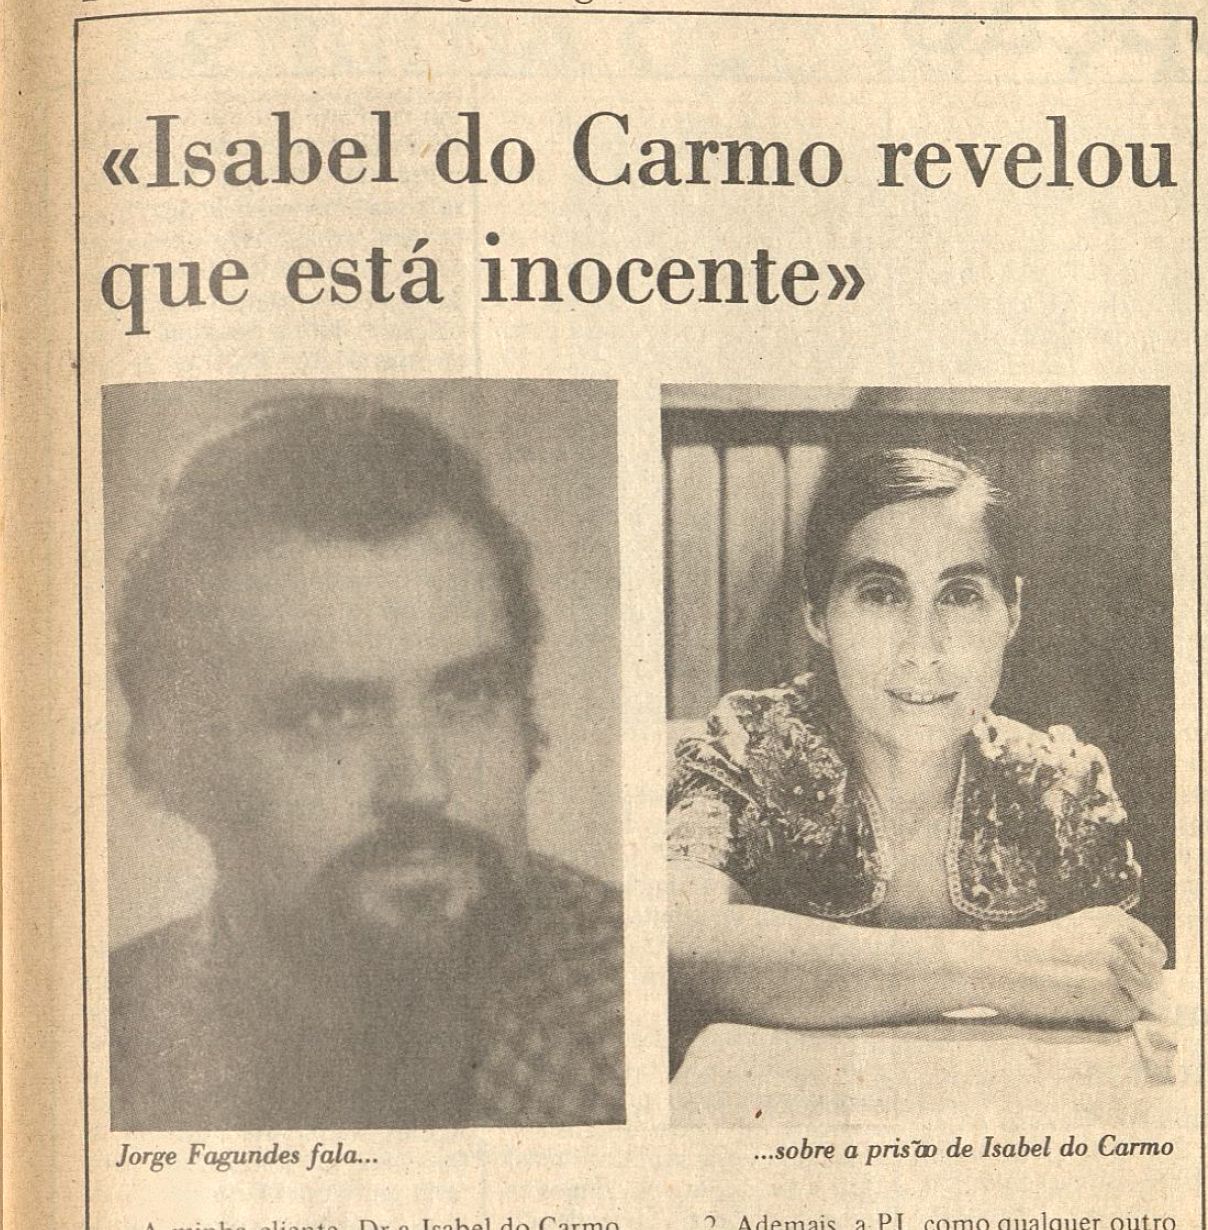 "Isabel do Carmo revelou que está inocente"